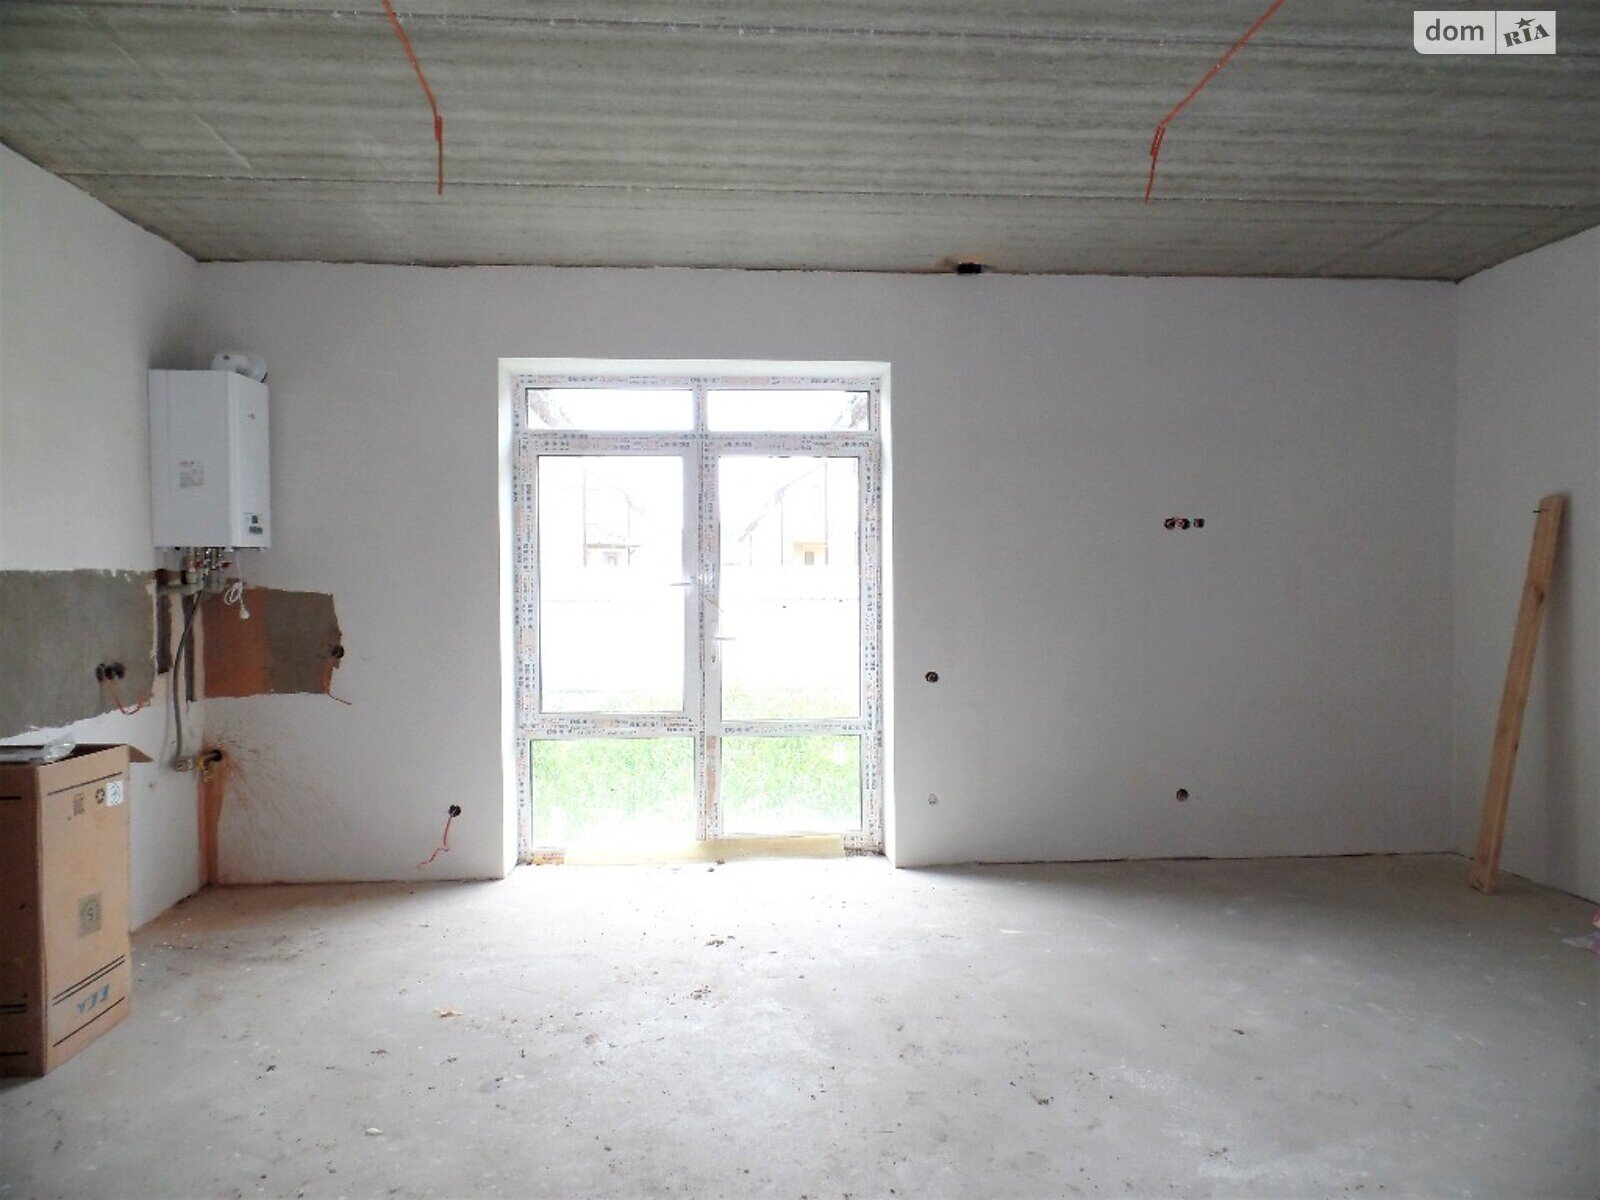 Продажа части дома в Агрономичном, вулиця Княгині Ольги, 4 комнаты фото 1